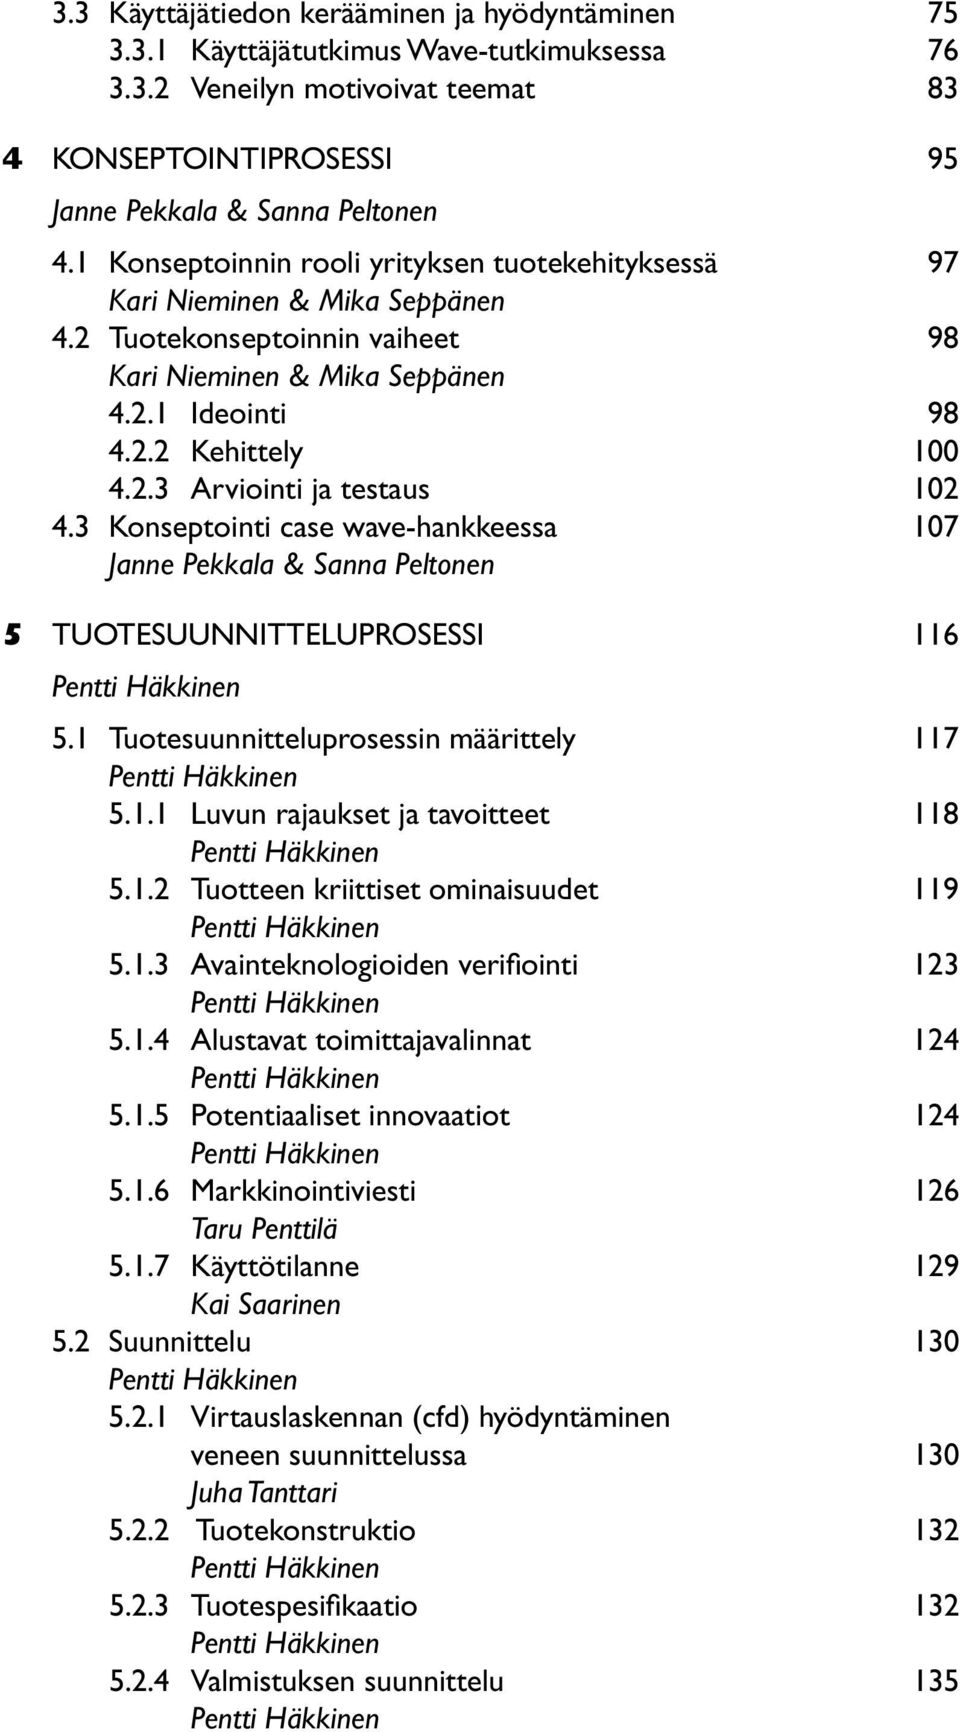 3 Konseptointi case wave-hankkeessa 107 Janne Pekkala & Sanna Peltonen 5 TUOTESUUNNITTELUPROSESSI 116 Pentti Häkkinen 5.1 Tuotesuunnitteluprosessin määrittely 117 Pentti Häkkinen 5.1.1 Luvun rajaukset ja tavoitteet 118 Pentti Häkkinen 5.